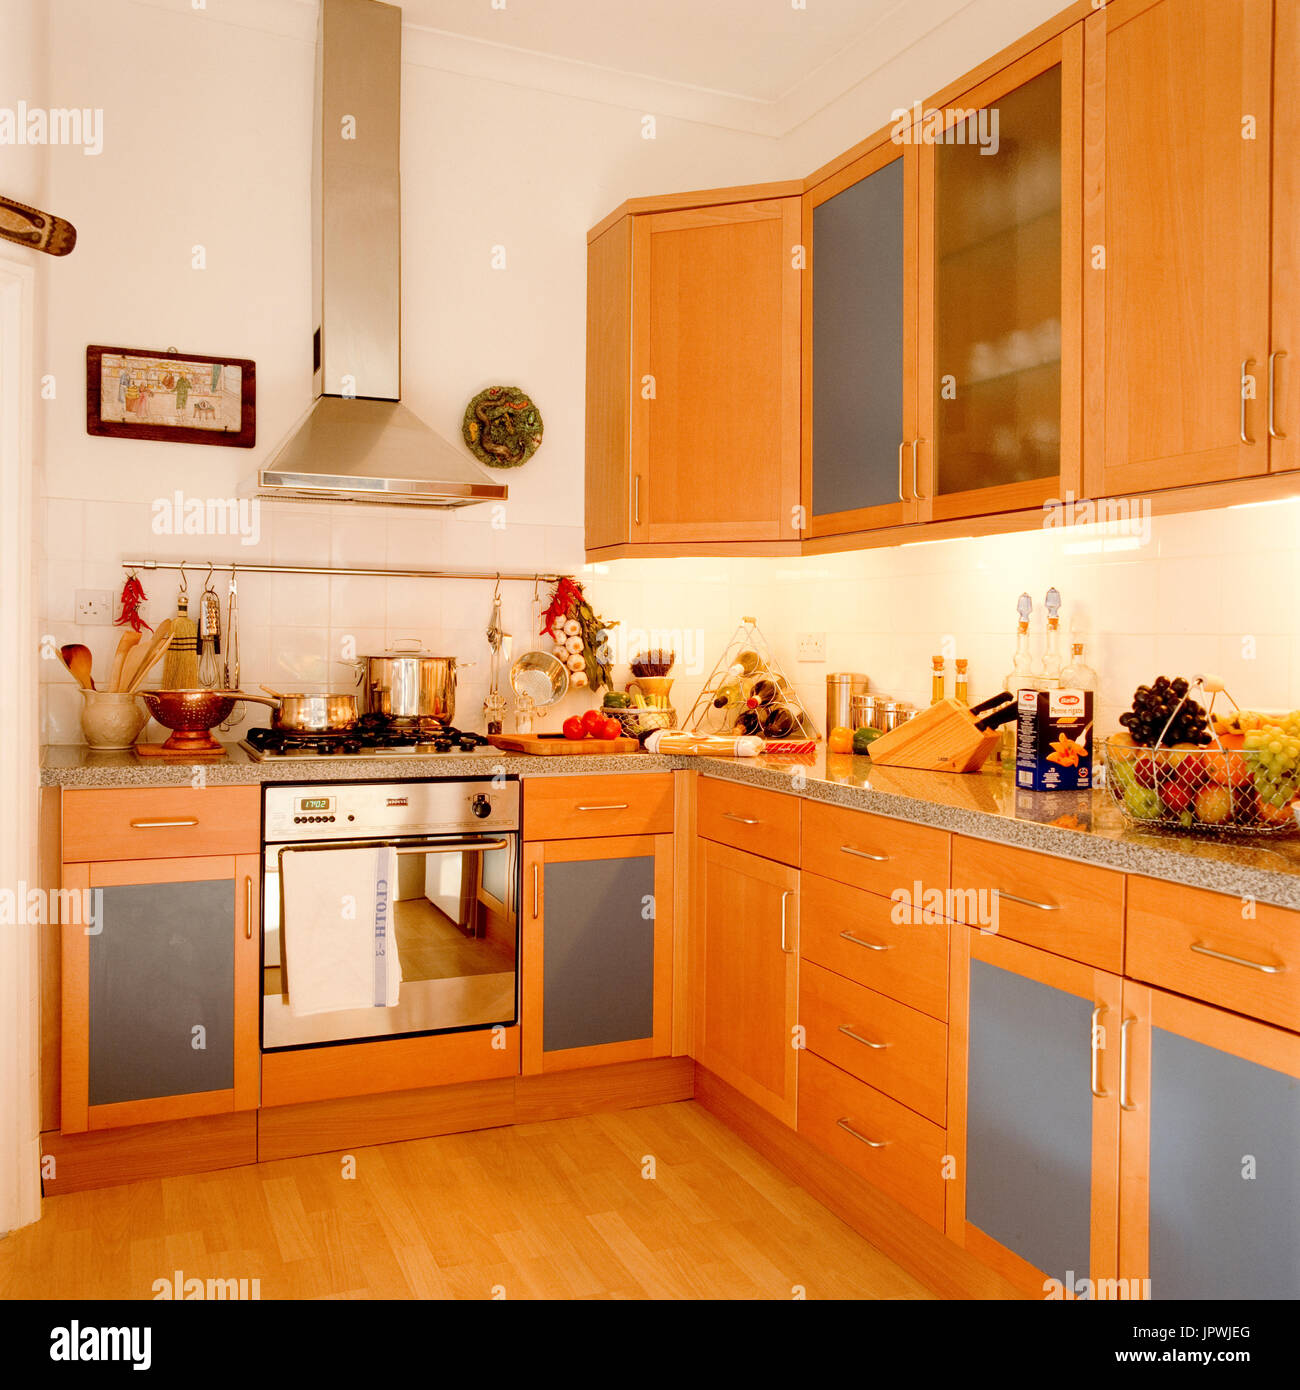 Modern wooden kitchen Stock Photo